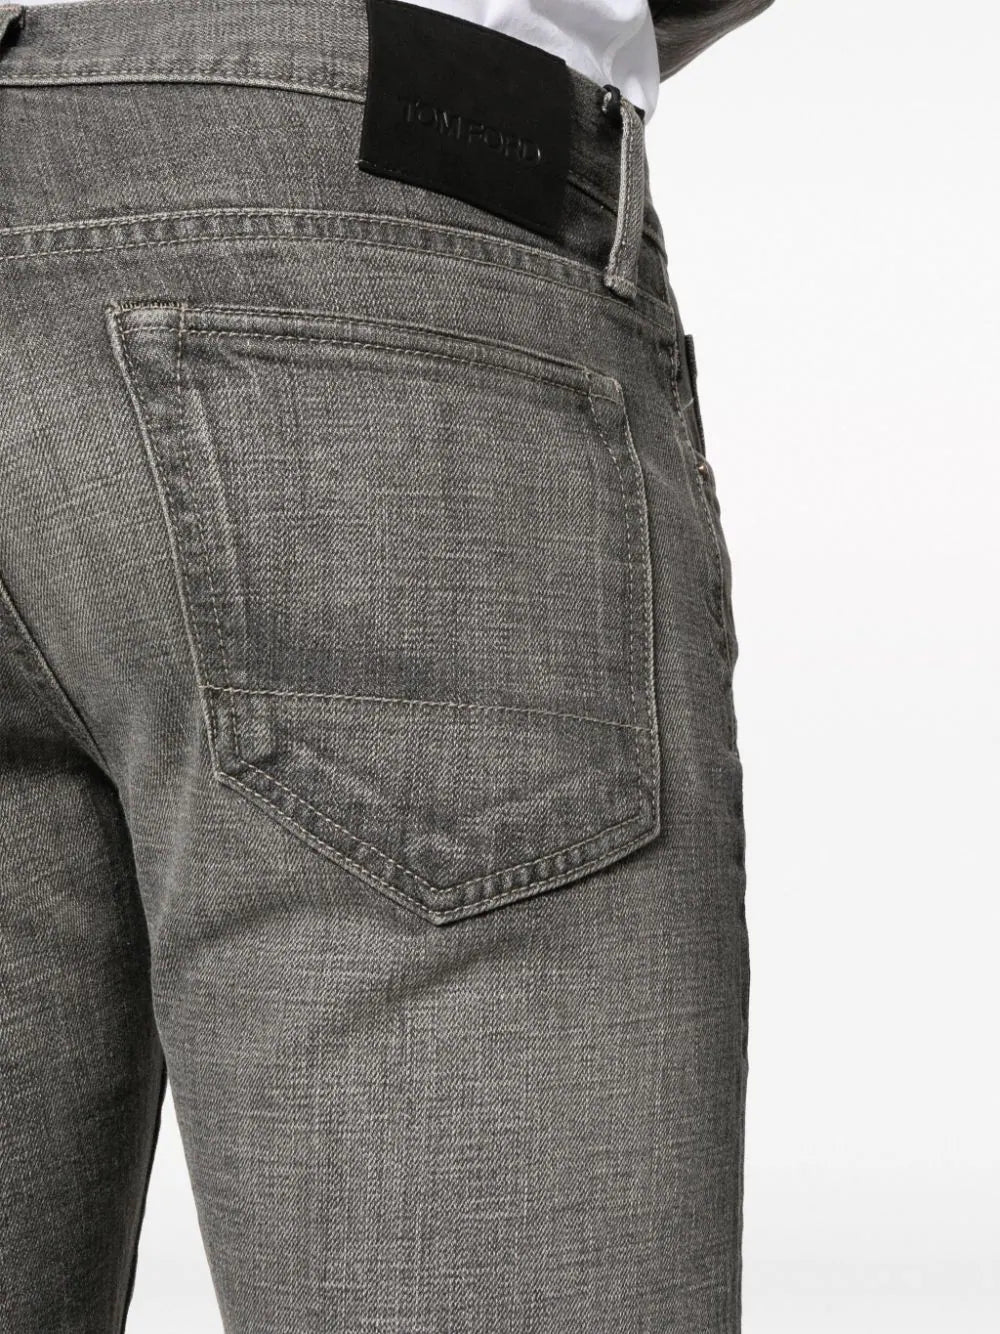 TOM FORD MEN Washed Slim Fit Denim Jeans Grey - MAISONDEFASHION.COM